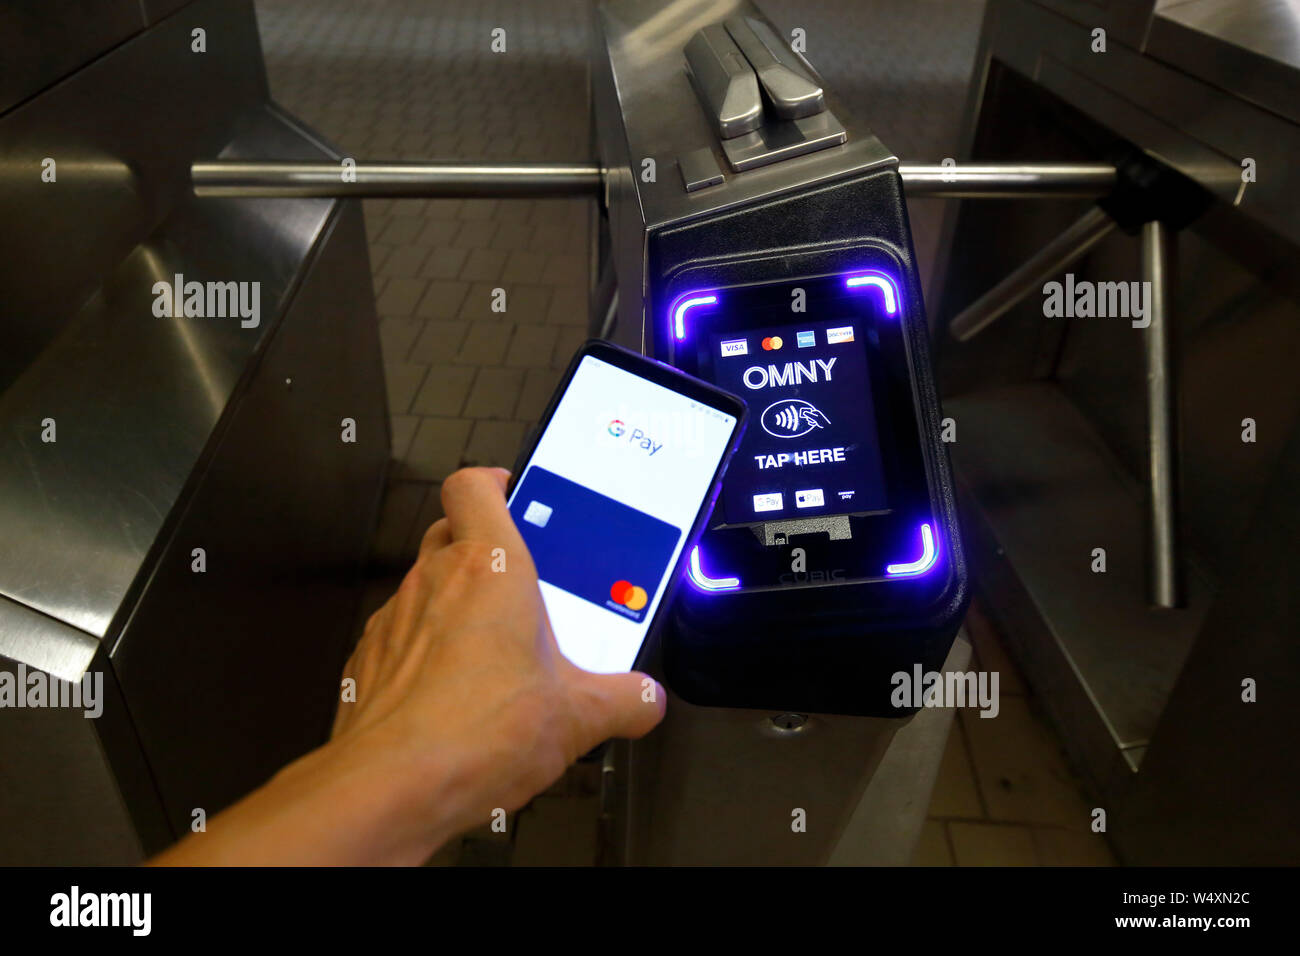 Un smartphone con Google pagar los grifos un torniquete del Metro de NYC reequipados con un lector de pago sin contacto NFC y aceptar pagos EMV Foto de stock